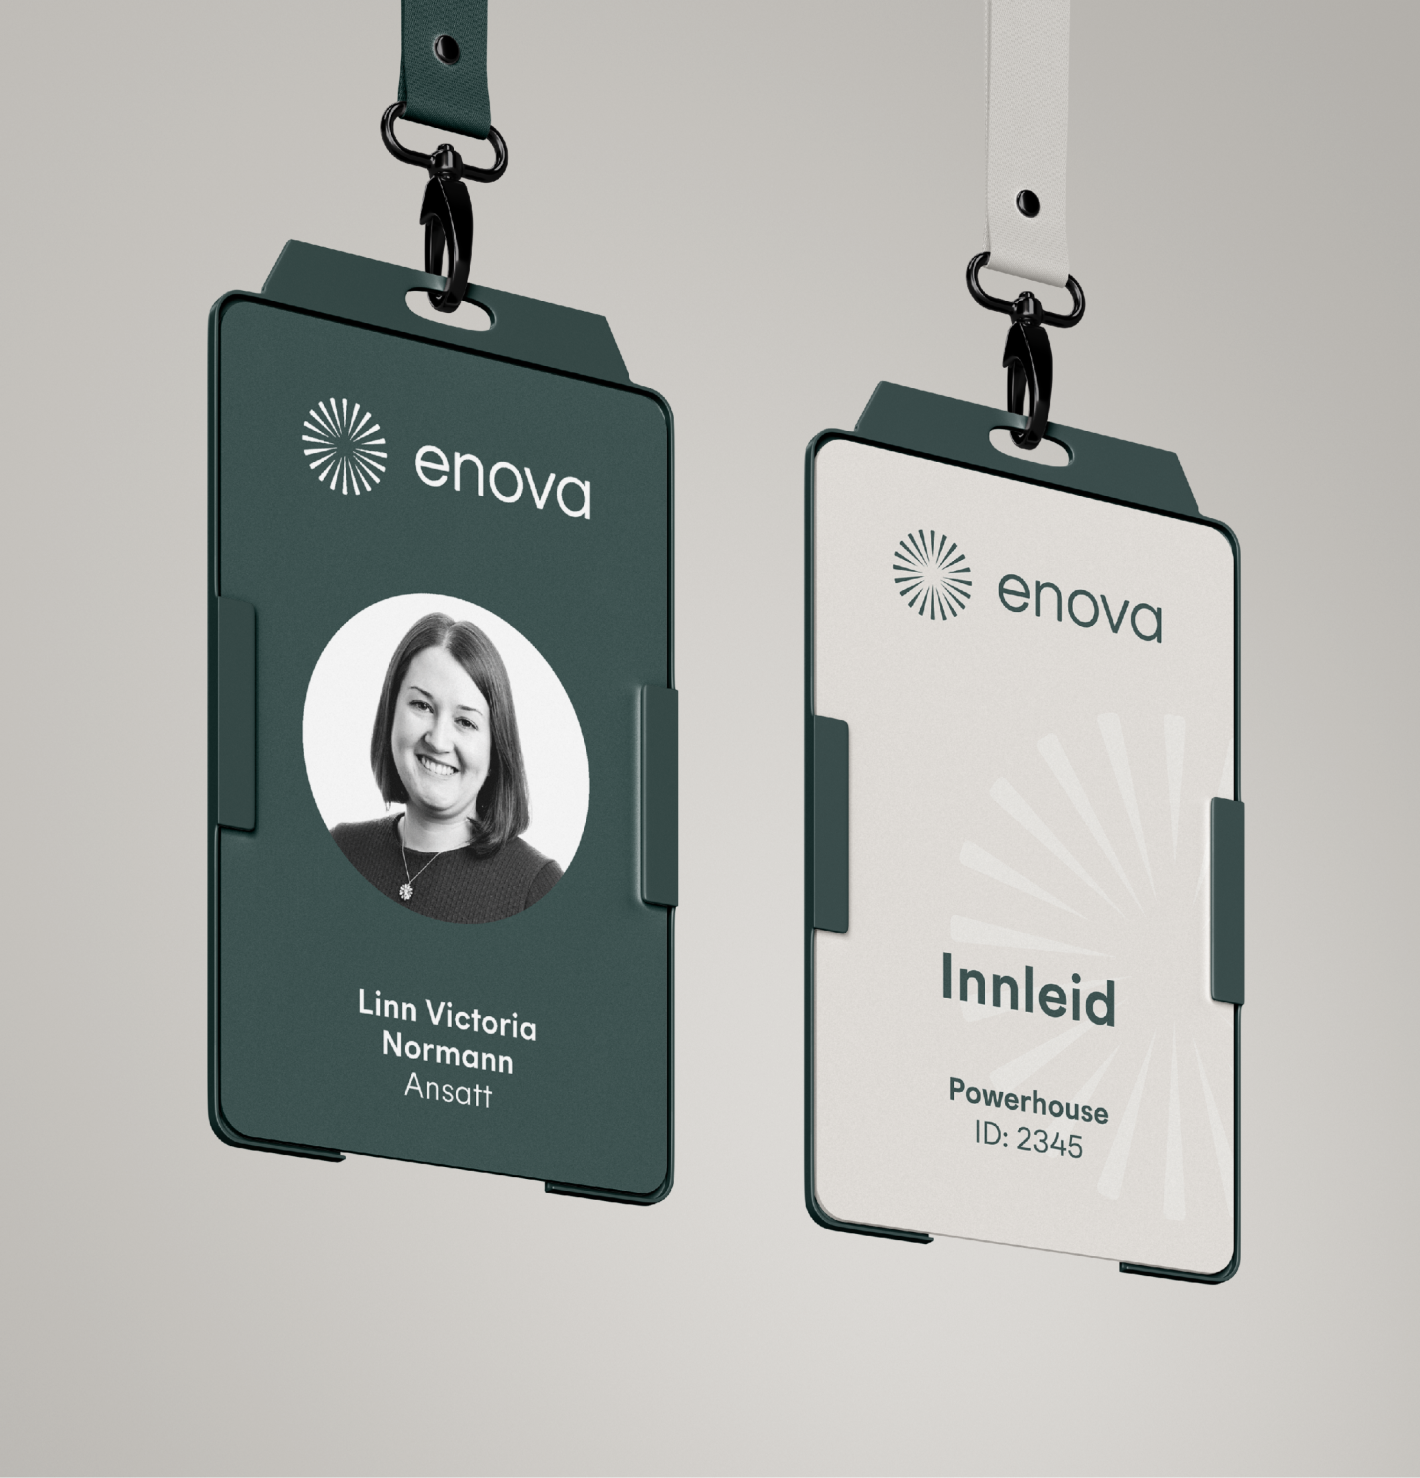 Enova badges